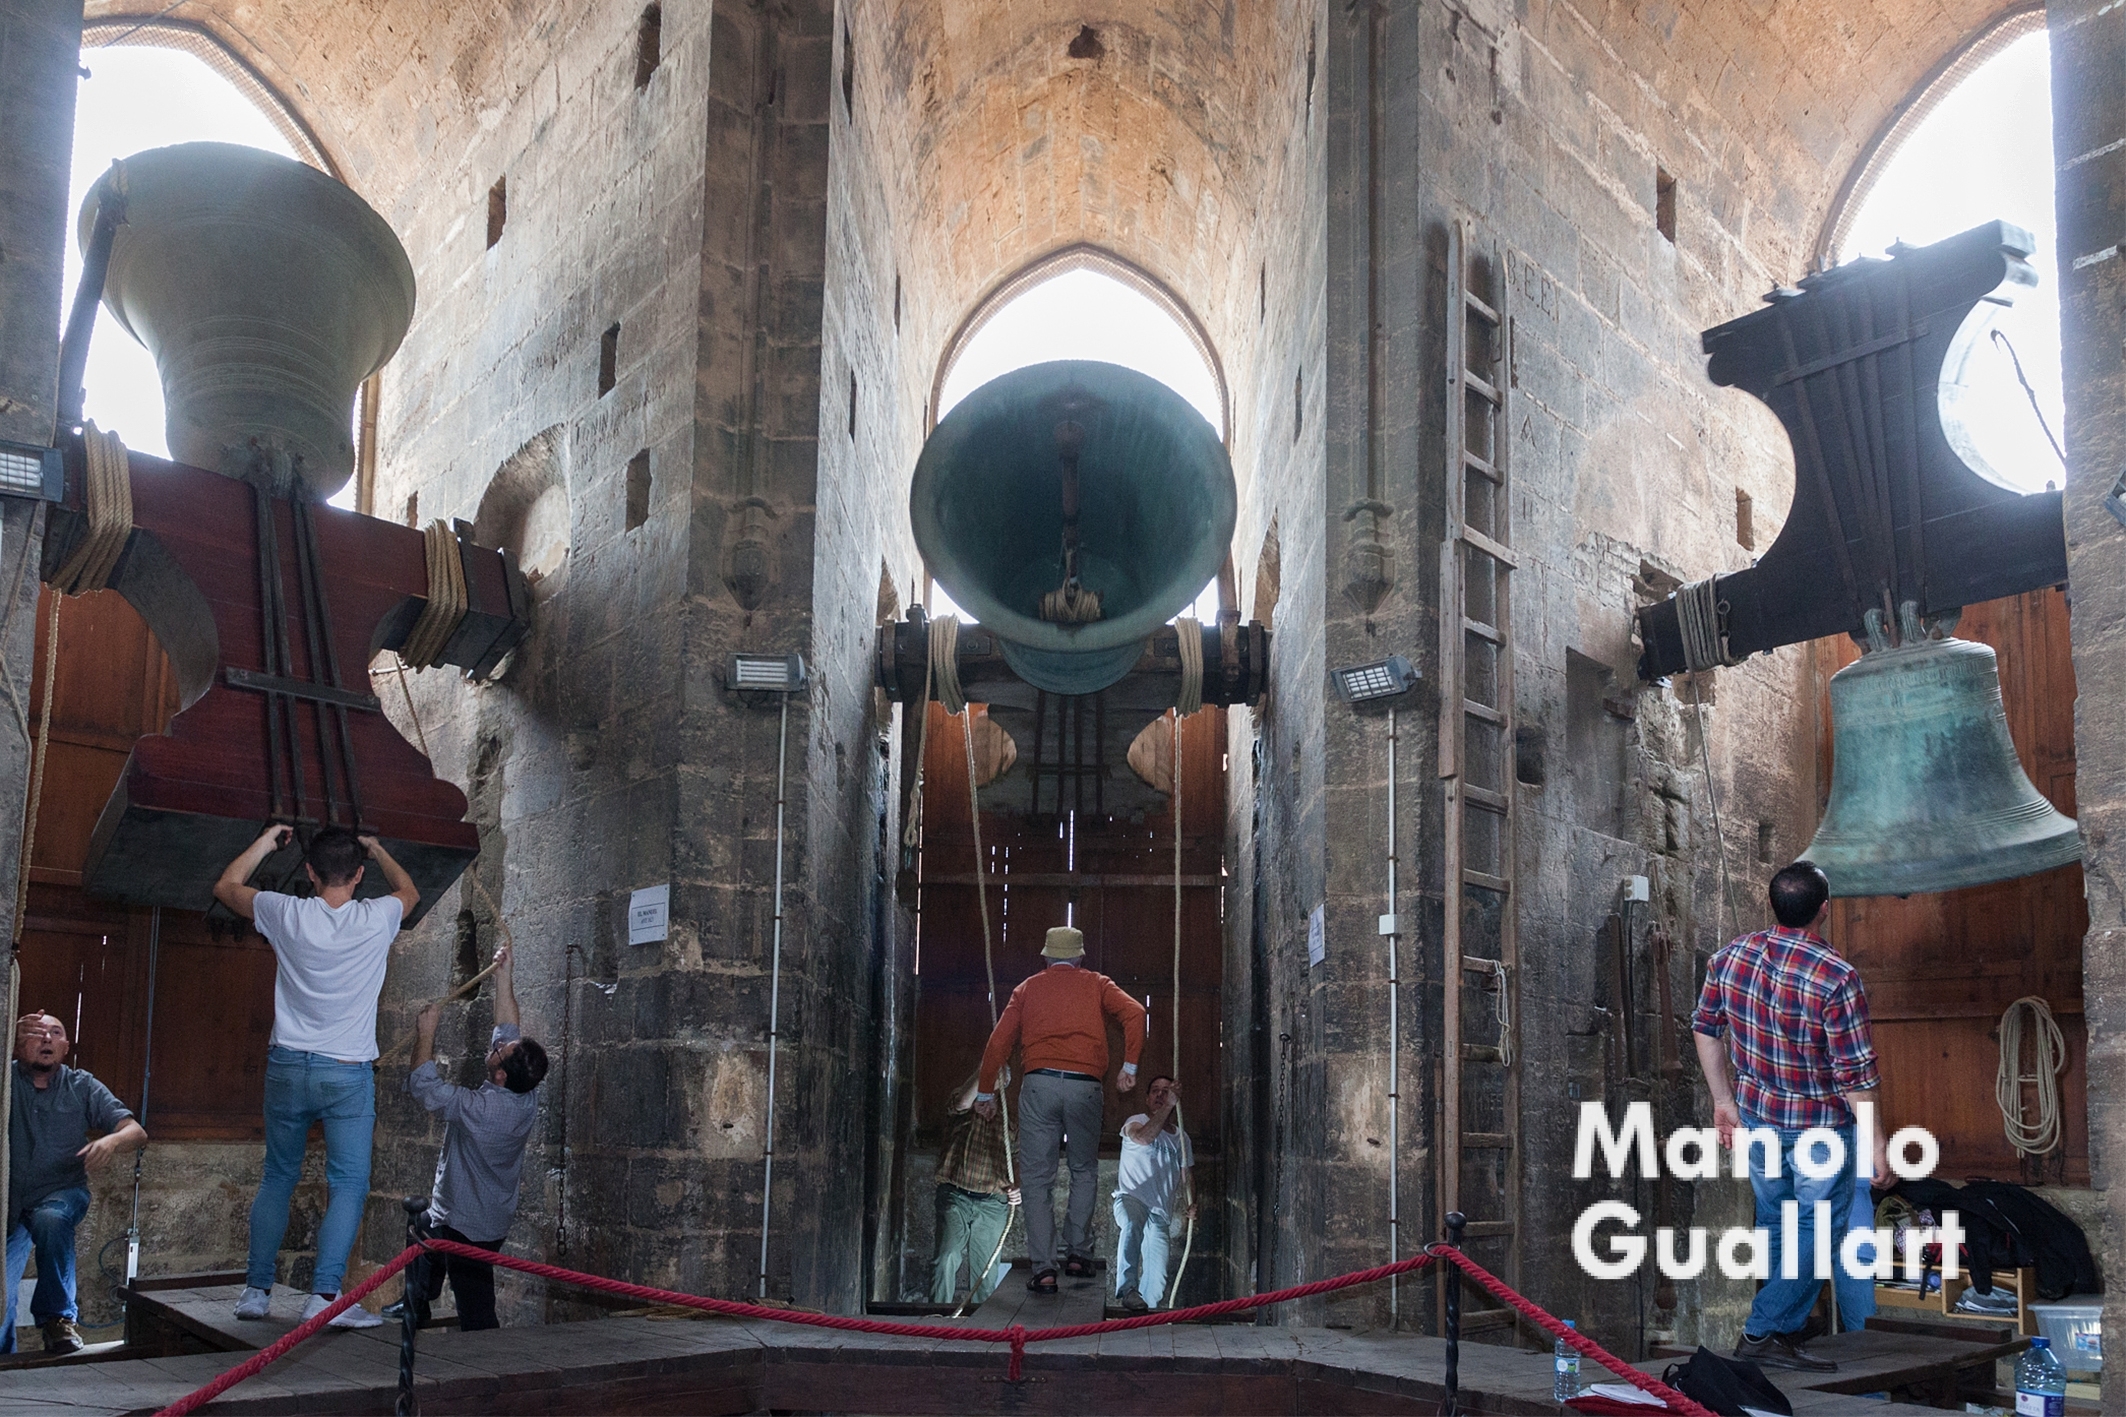 Las campanas mayores de la Catedral de Valencia tocan a fiesta. Foto de Manolo Guallart.